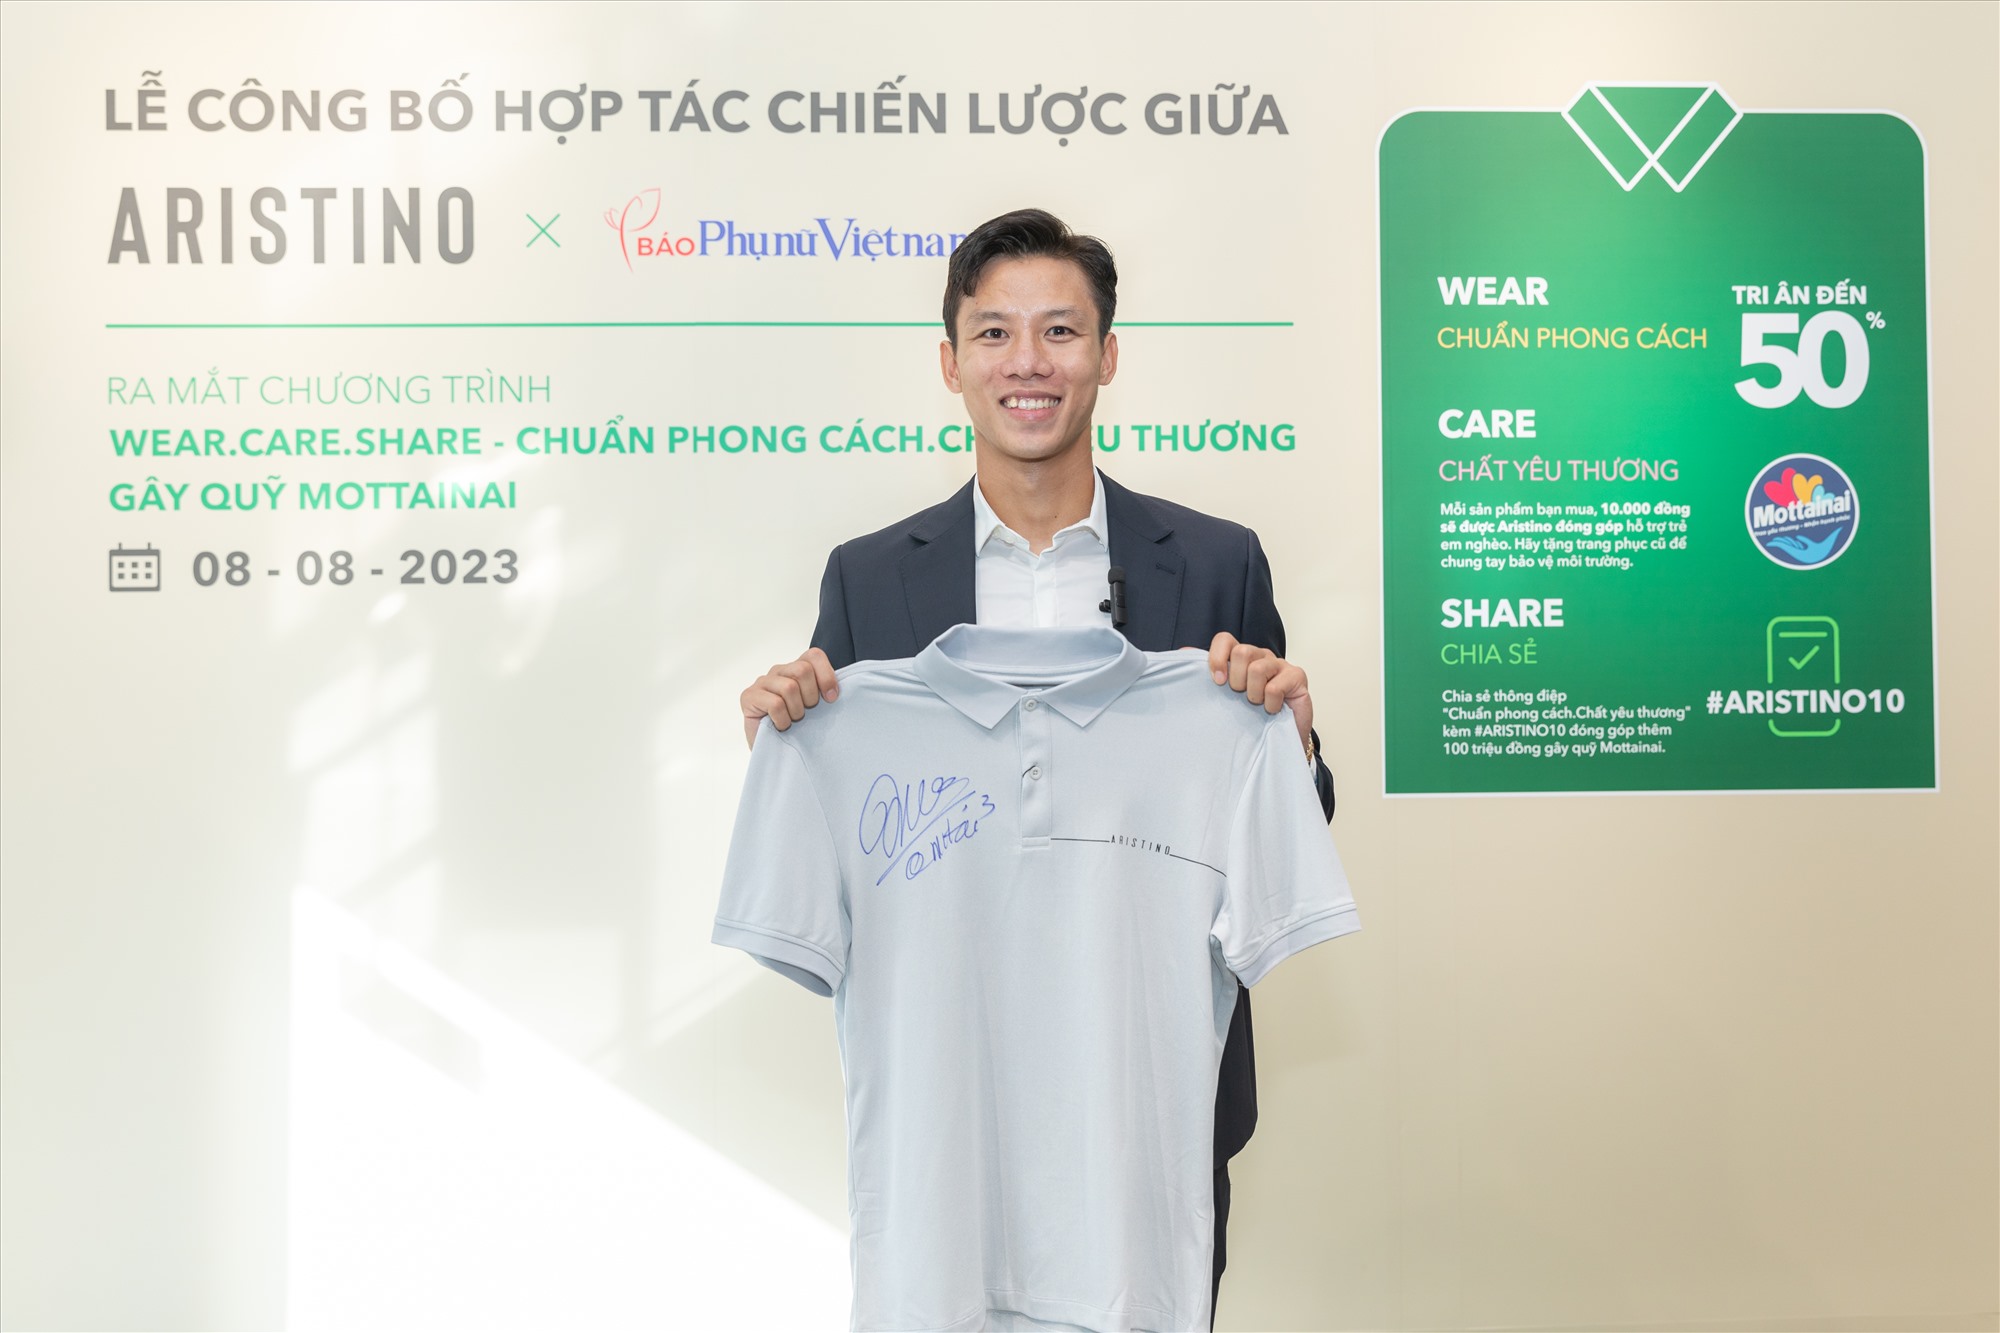 Cầu thủ Quế Ngọc Hải hào hứng khi tham gia sự kiện mang nhiều ý nghĩa tại Hà Nội. Ảnh: BTC